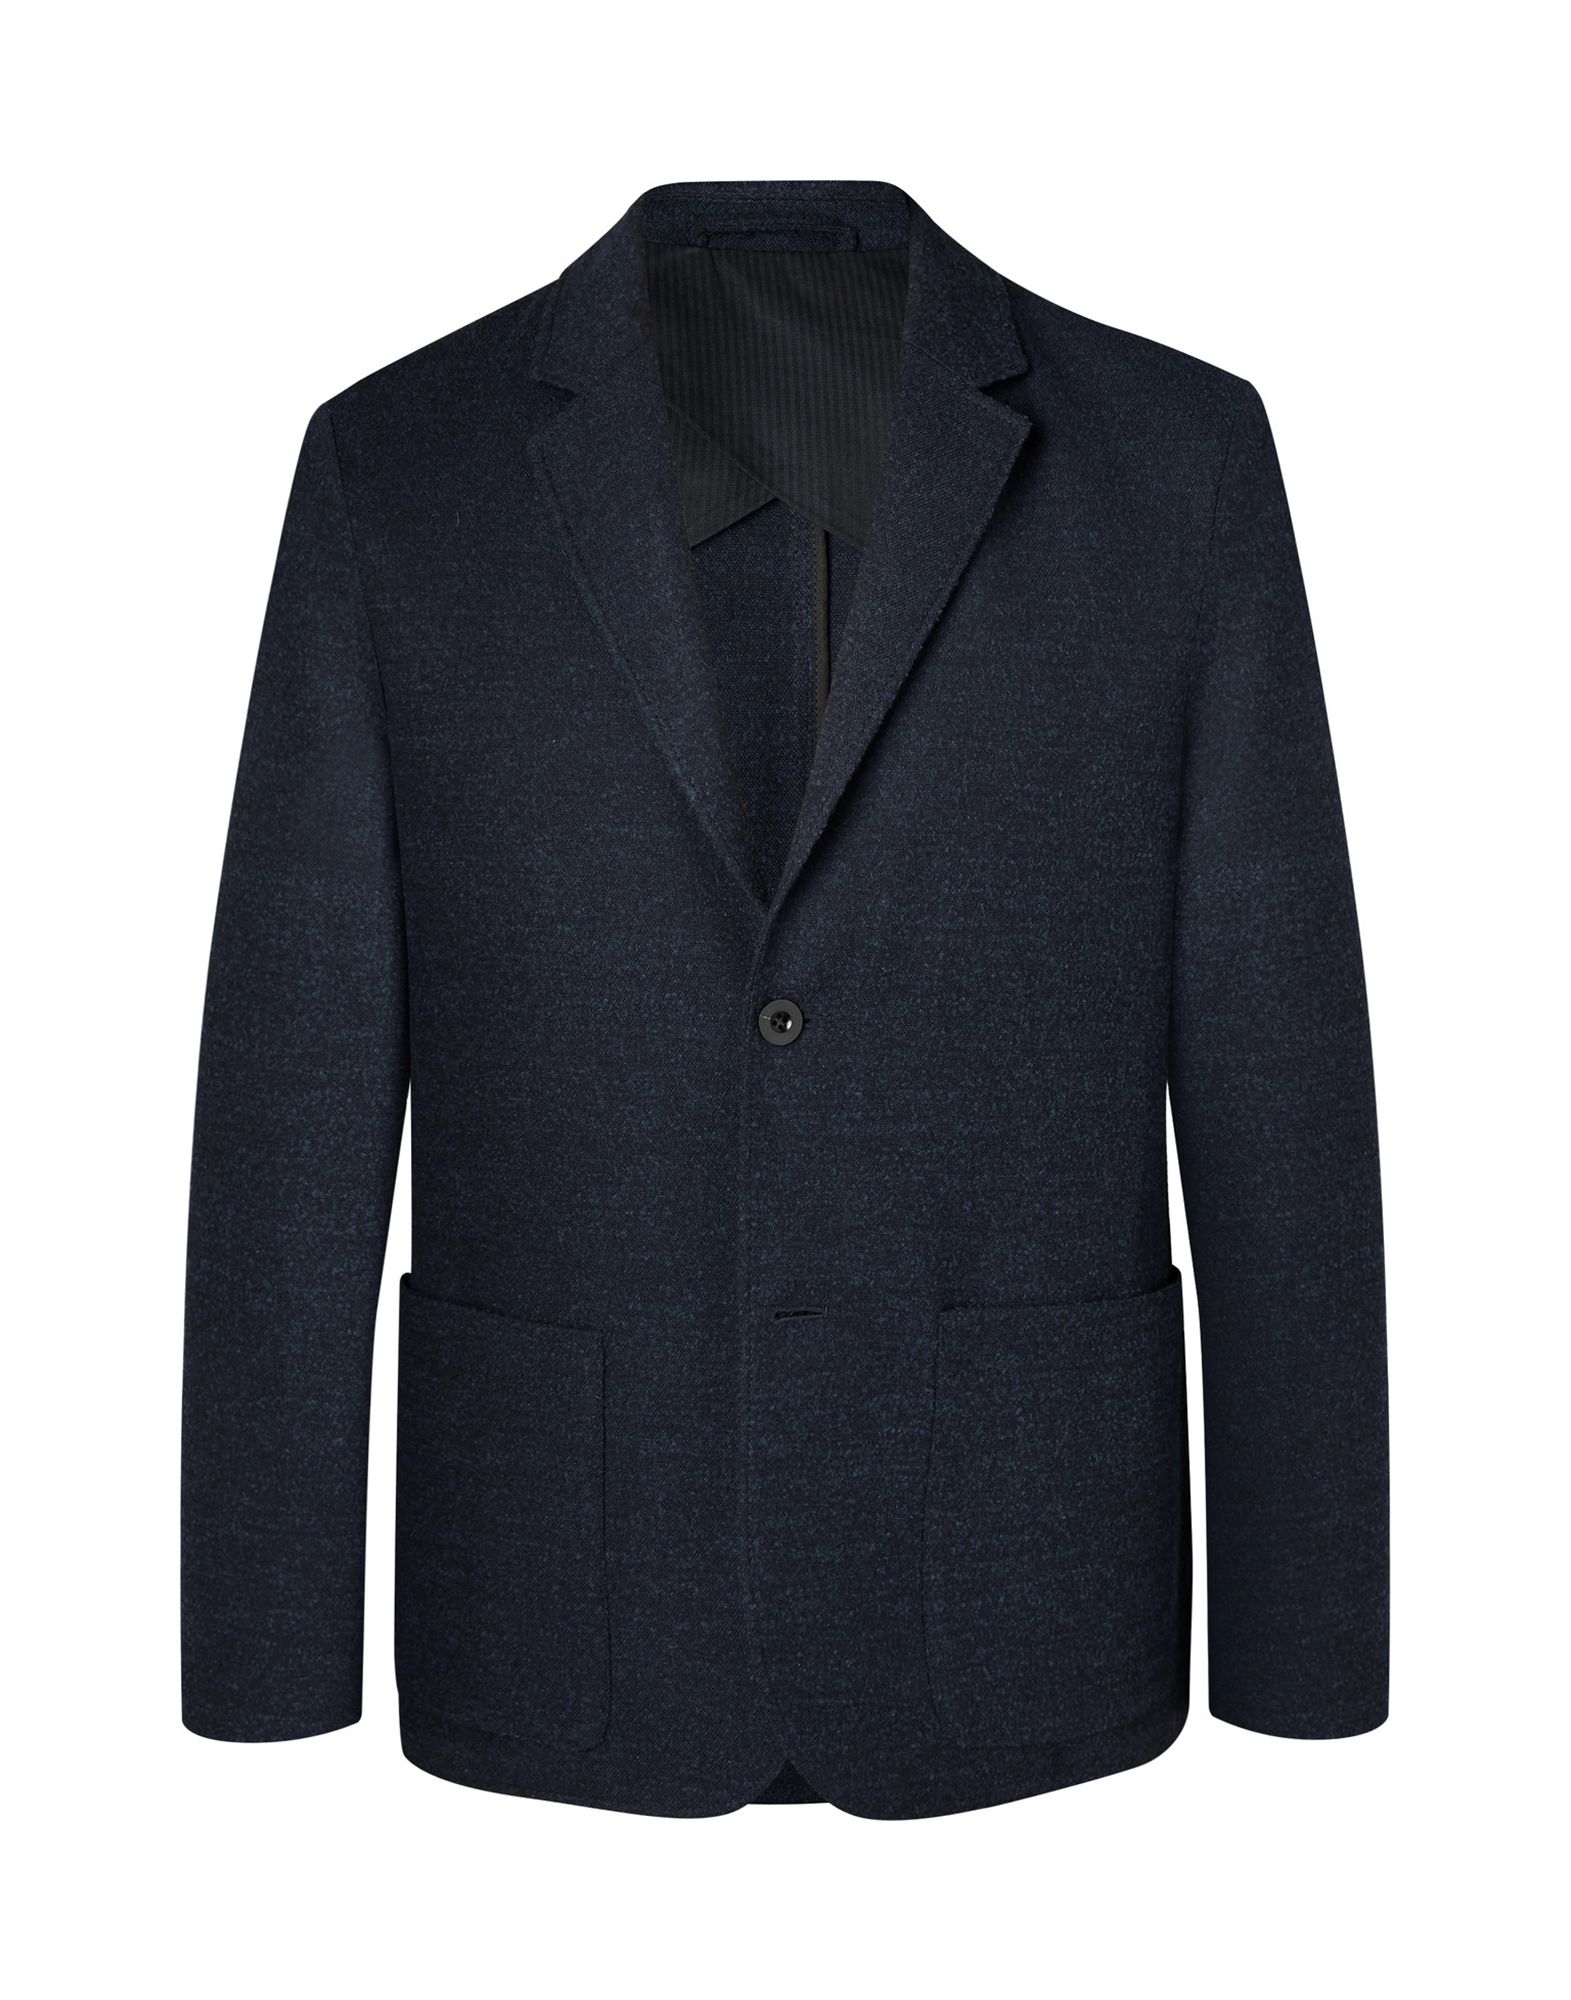 MR P. Suit jackets